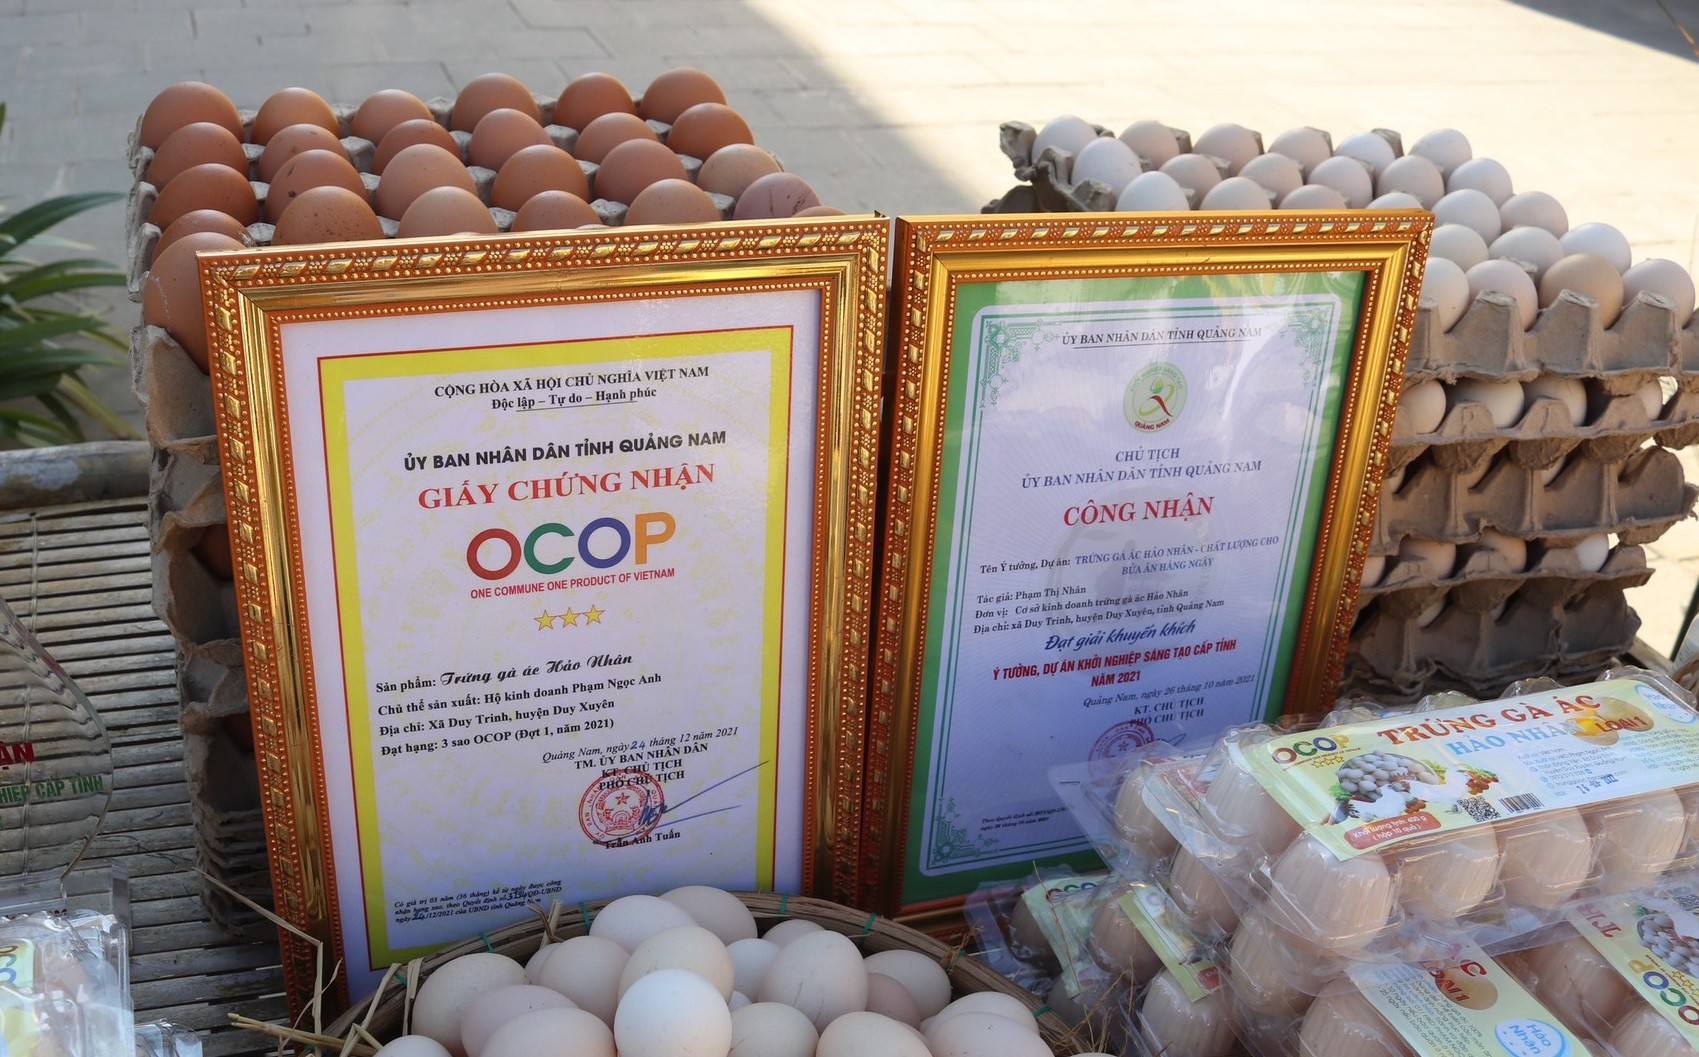 

Hiện nay, nguồn thu chính của trang trại chị Nhân chính là từ trứng gà ác, trung bình mỗi ngày sẽ thu hơn 2.000 quả, giá bán sẽ dao động từ 28.000-30.000 đồng/10 quả trứng
